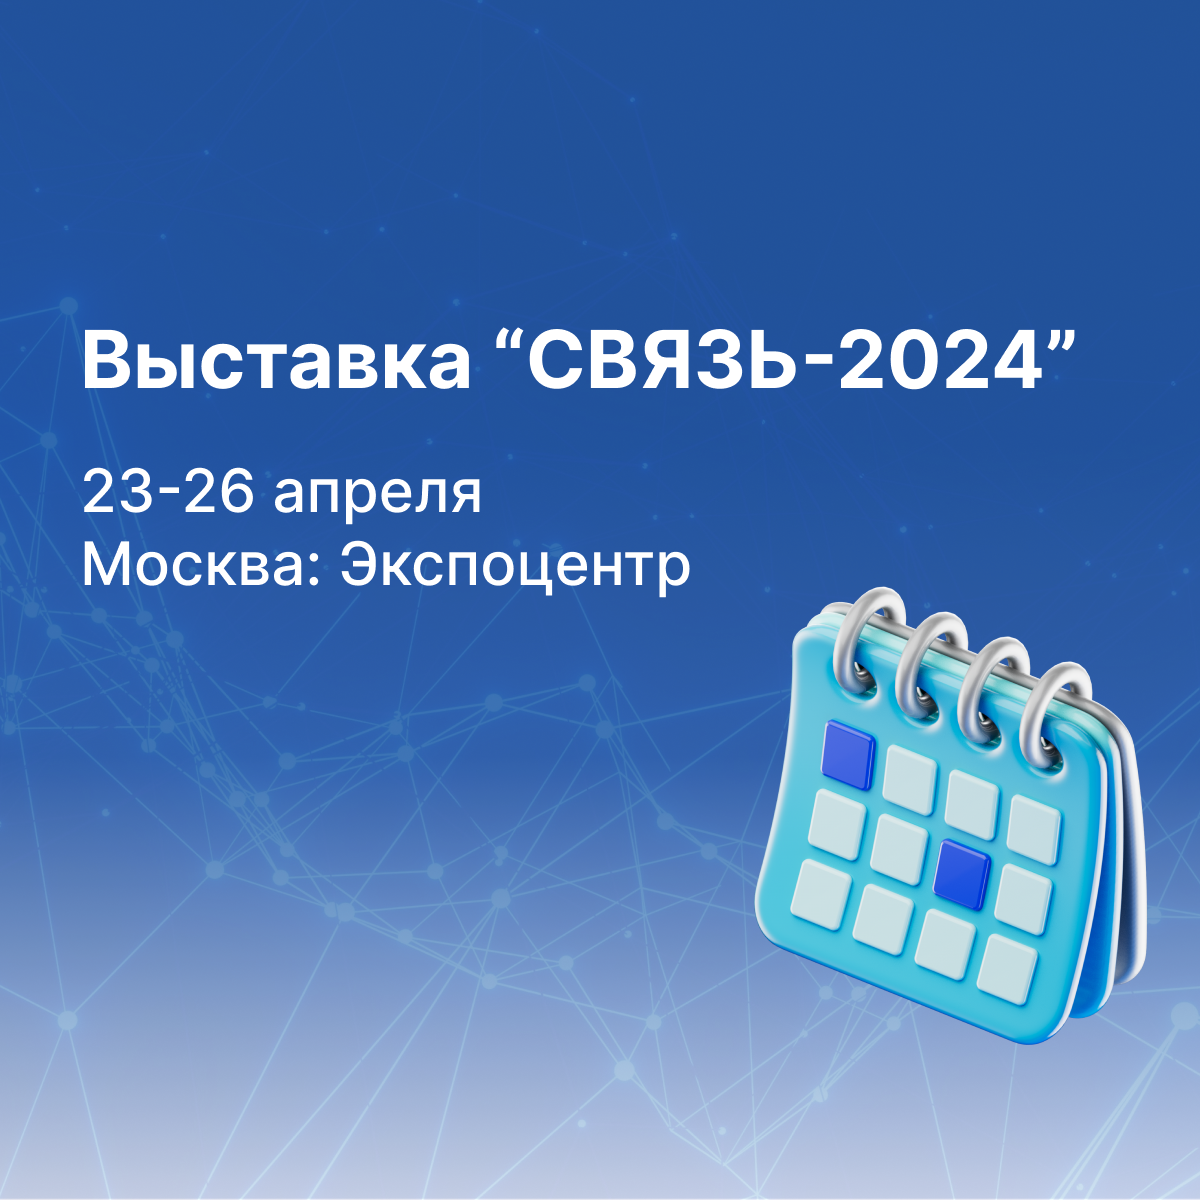 Команда Aurus приглашает на выставку СВЯЗЬ-2024 в Москве